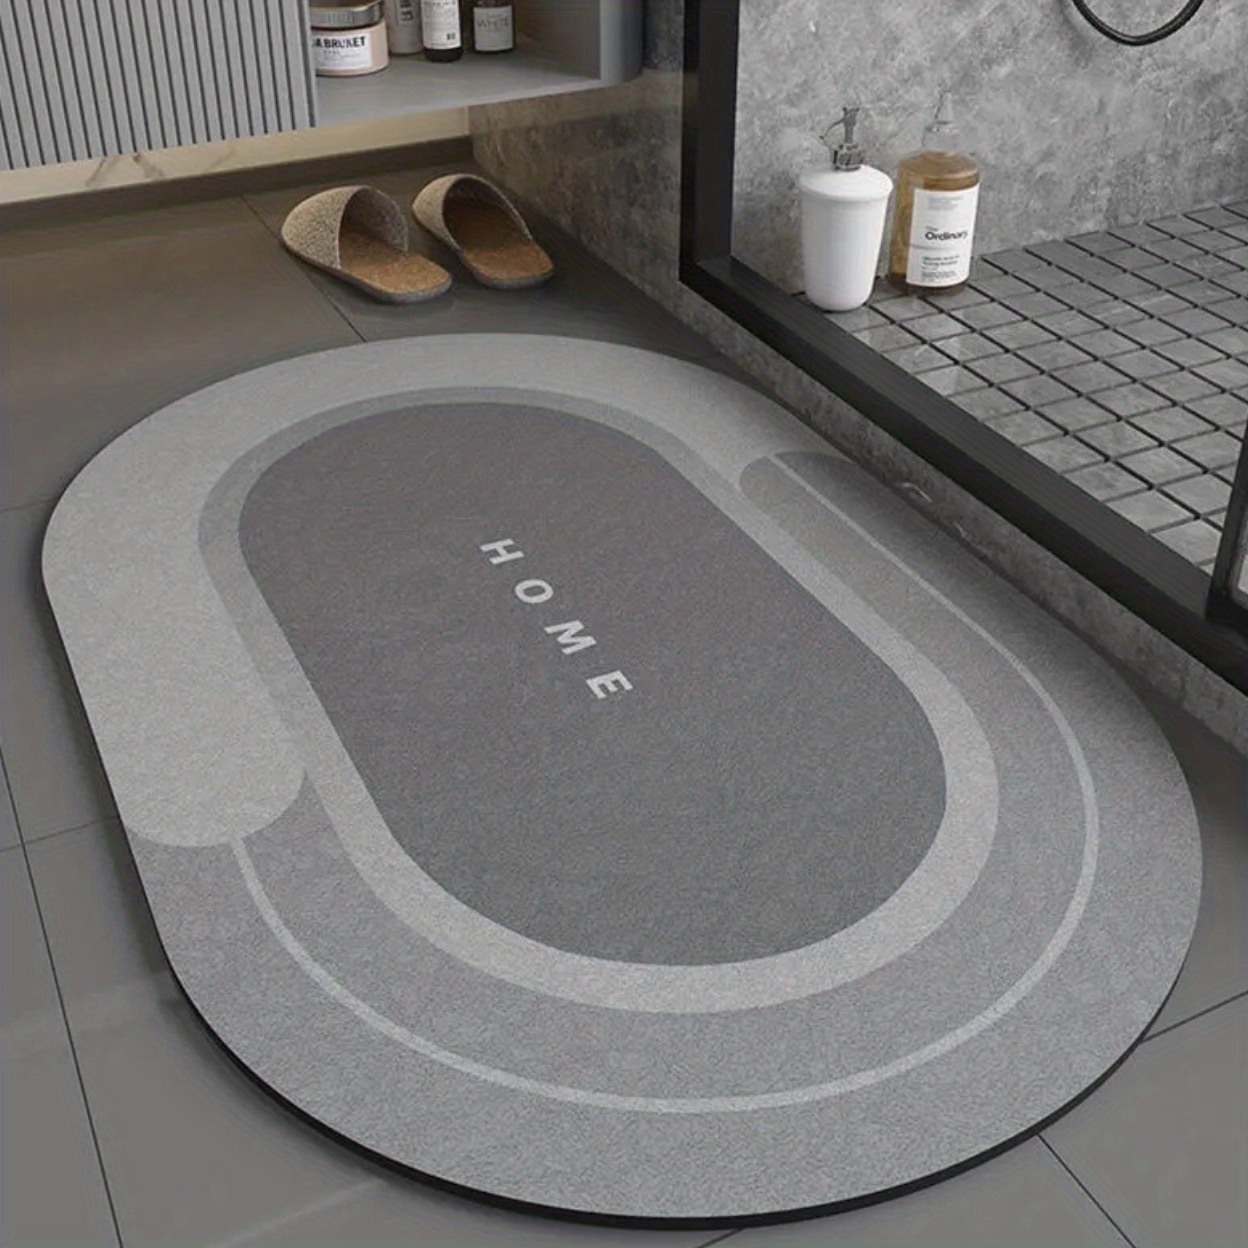 Super Absorbent Floor Mat – NADZ